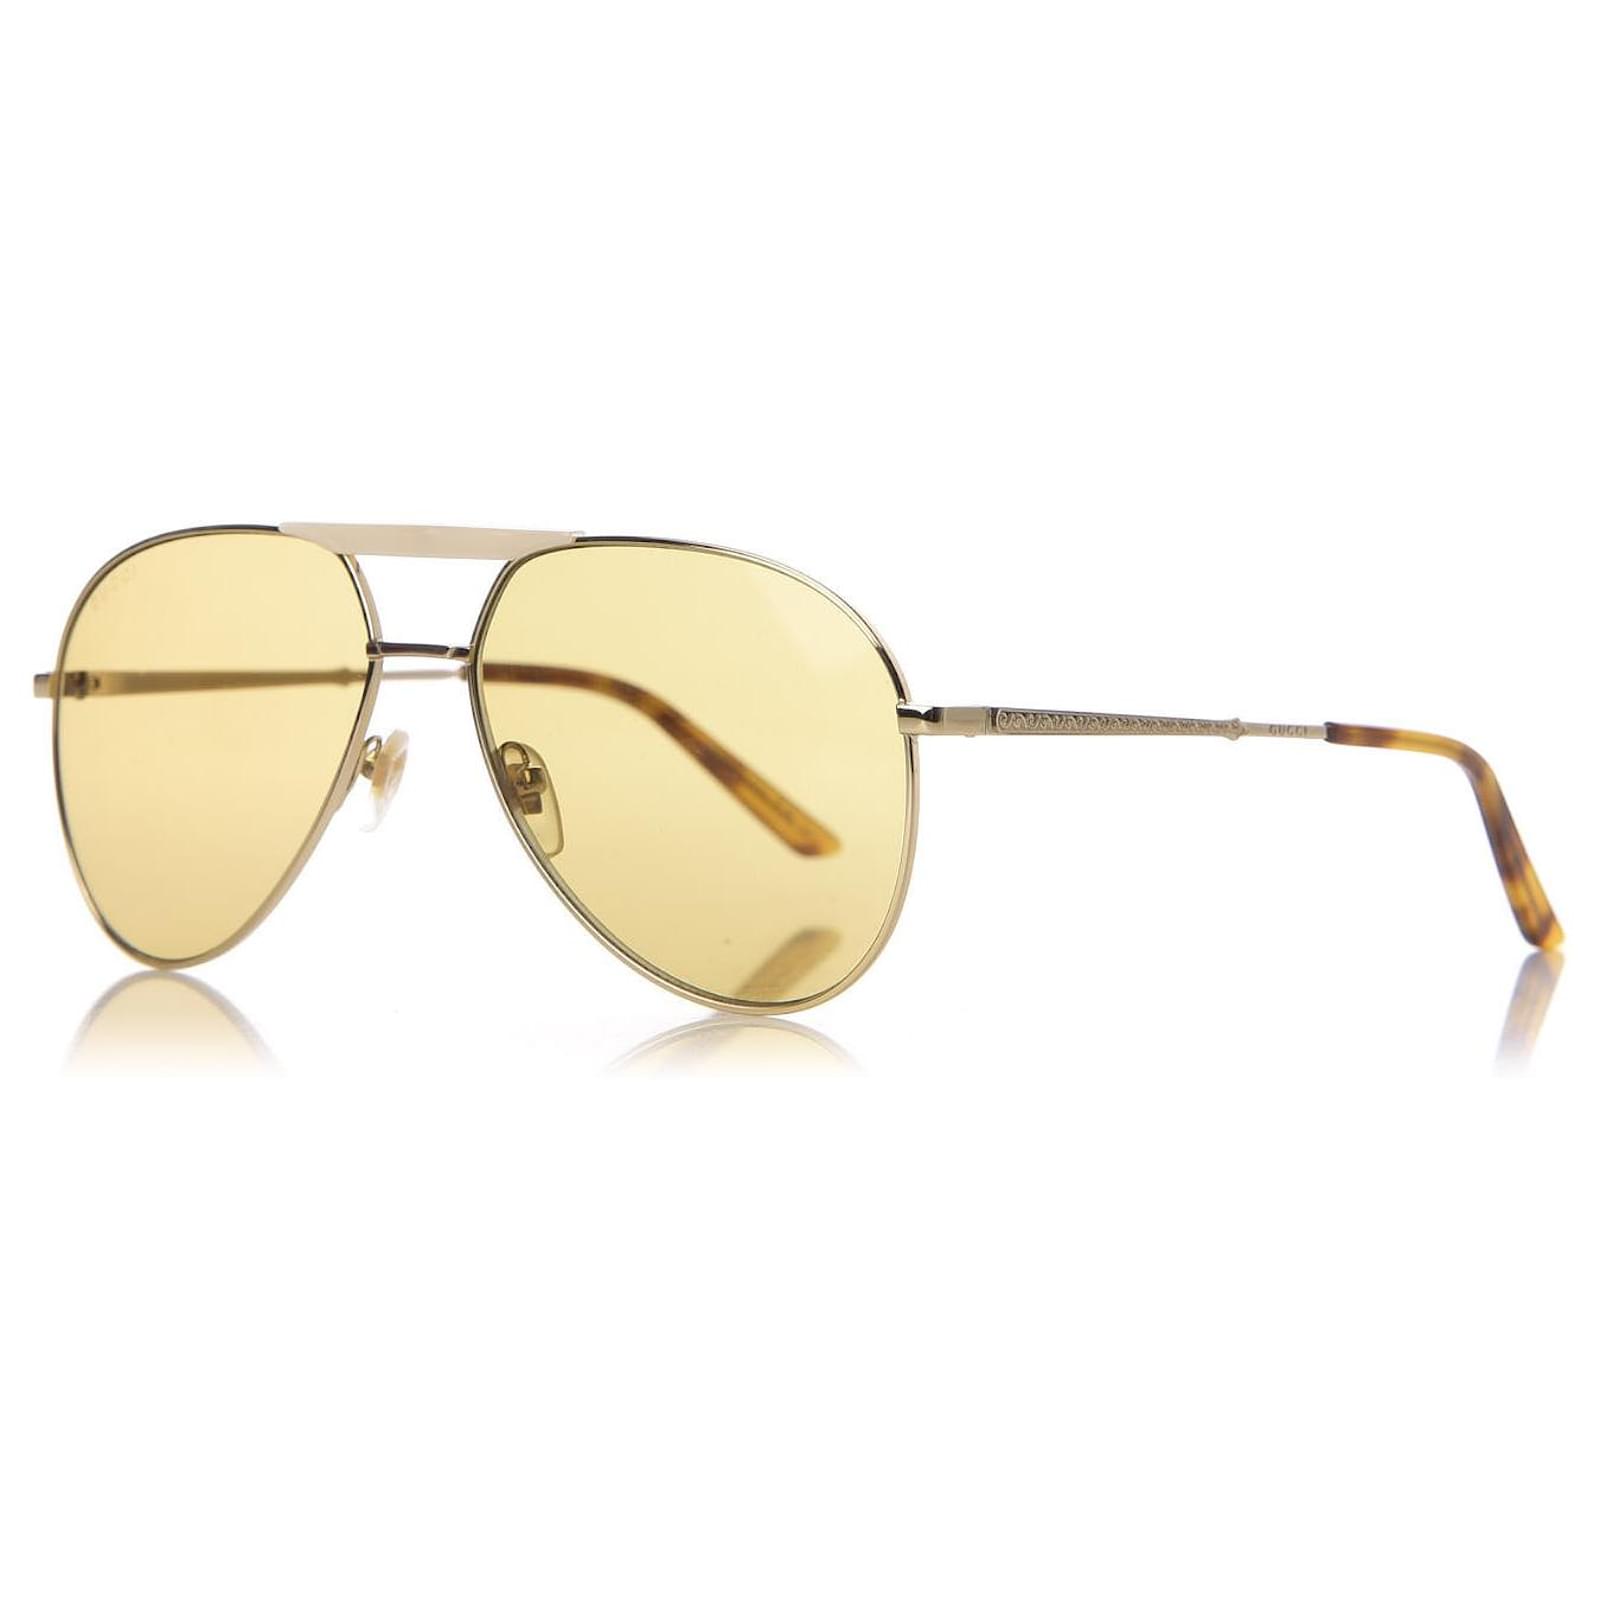 Gafas de sol Gucci masculina modelo aviador oversize de metal en tono  dorado.